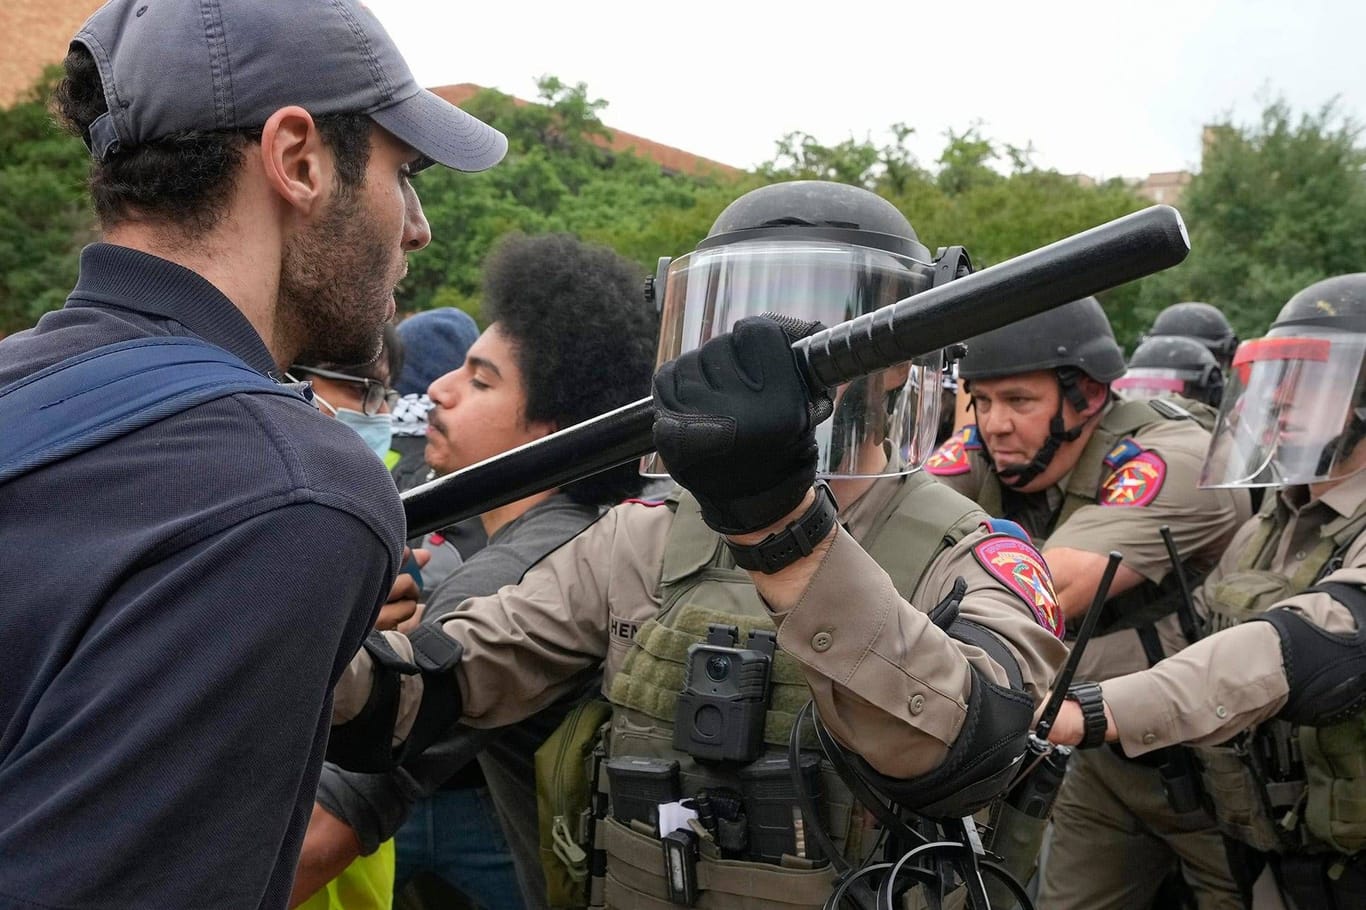 Austin, Texas: An der Universität von Texas kommt es zu Auseinandersetzungen zwischen Protestierenden und der Polizei.